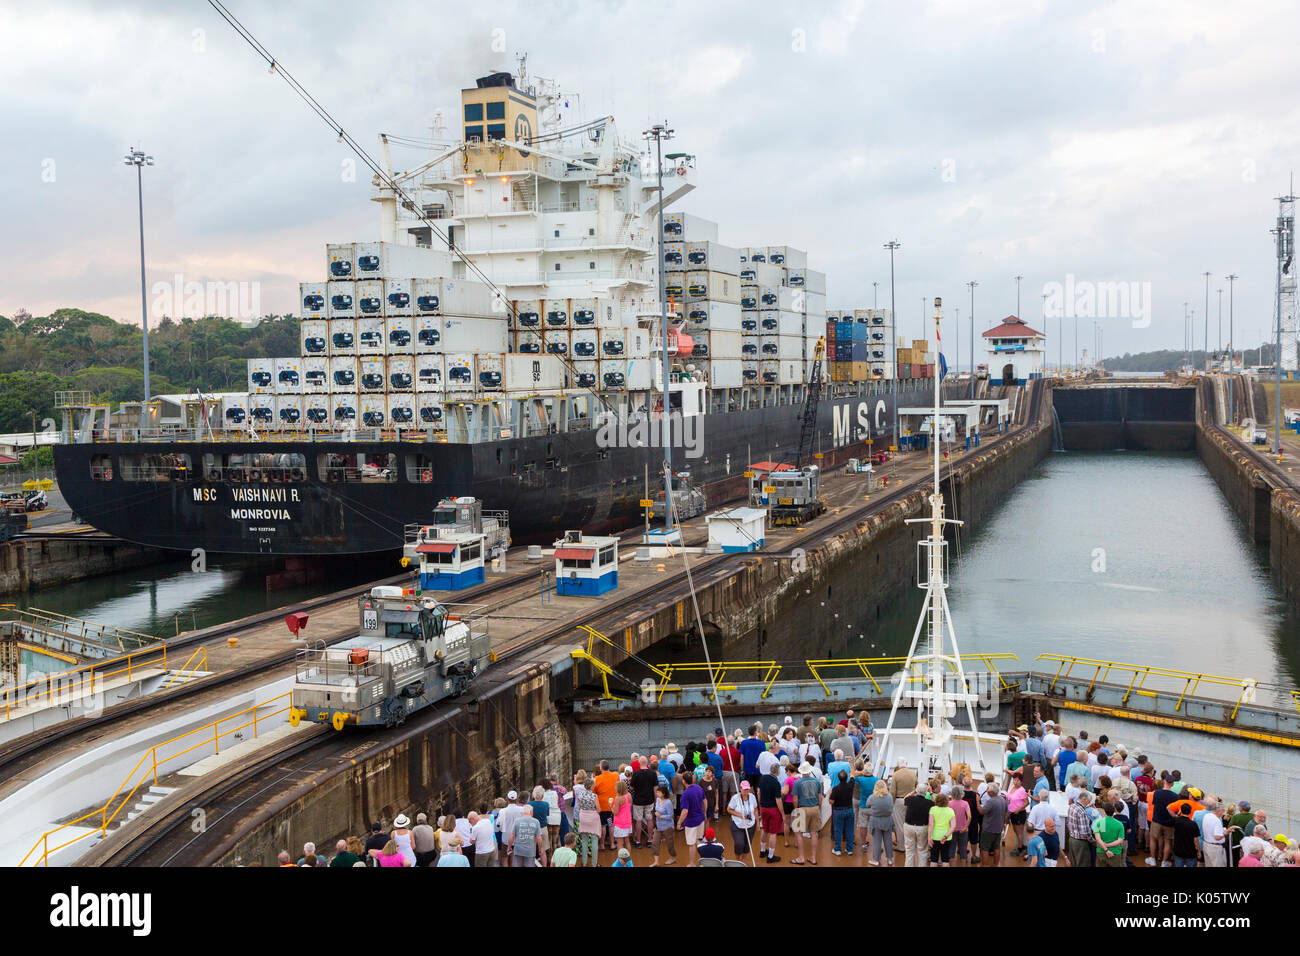 Canale di Panama, Panama. Entrando nel primo blocco, Caraibi, dirigendosi verso il Lago di Gatun, mentre i passeggeri guarda sul ponte. Foto Stock